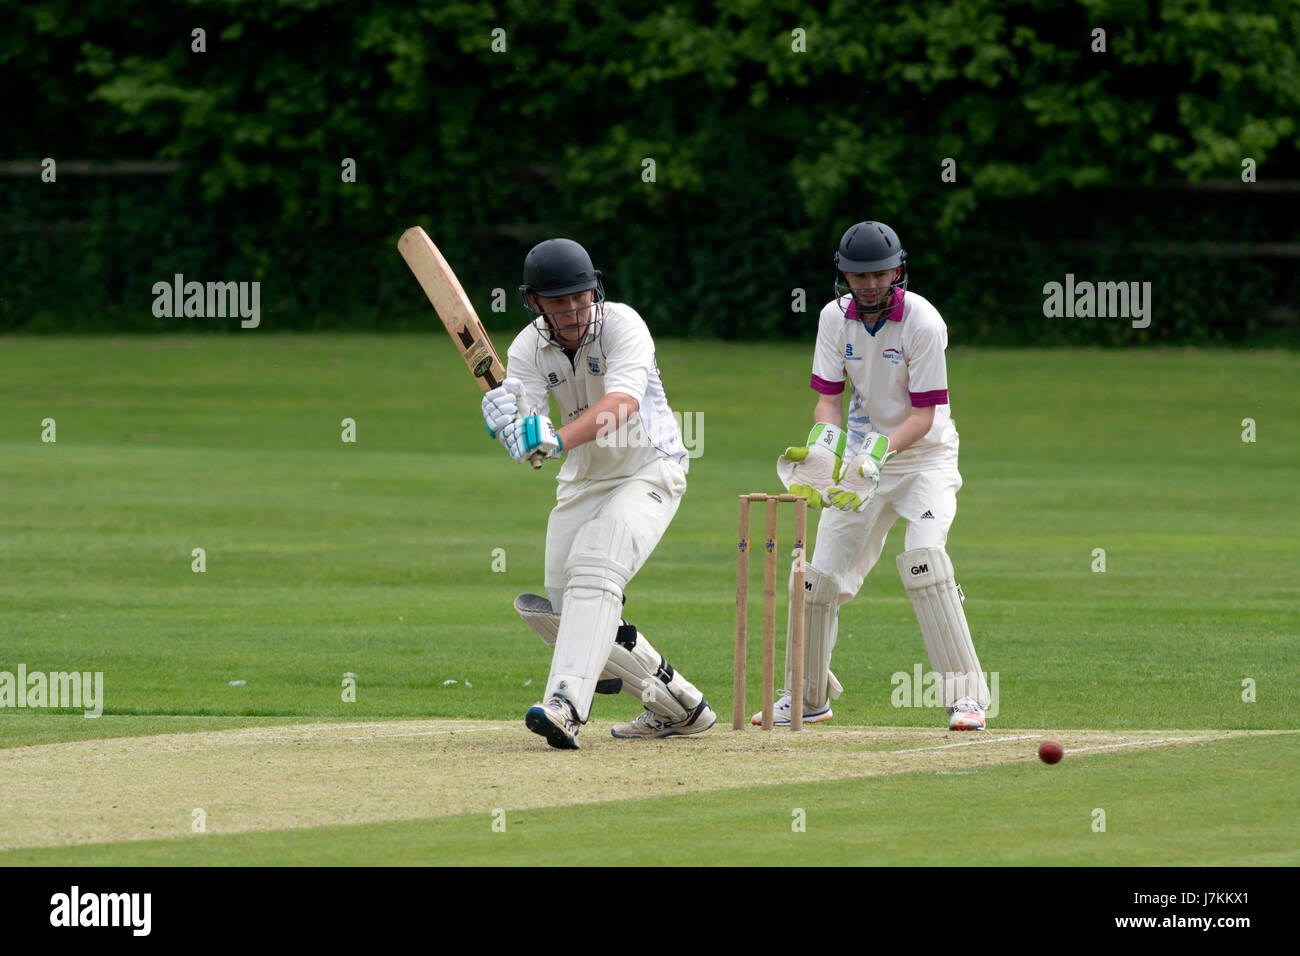 Le sport universitaire, UK - men's cricket Banque D'Images